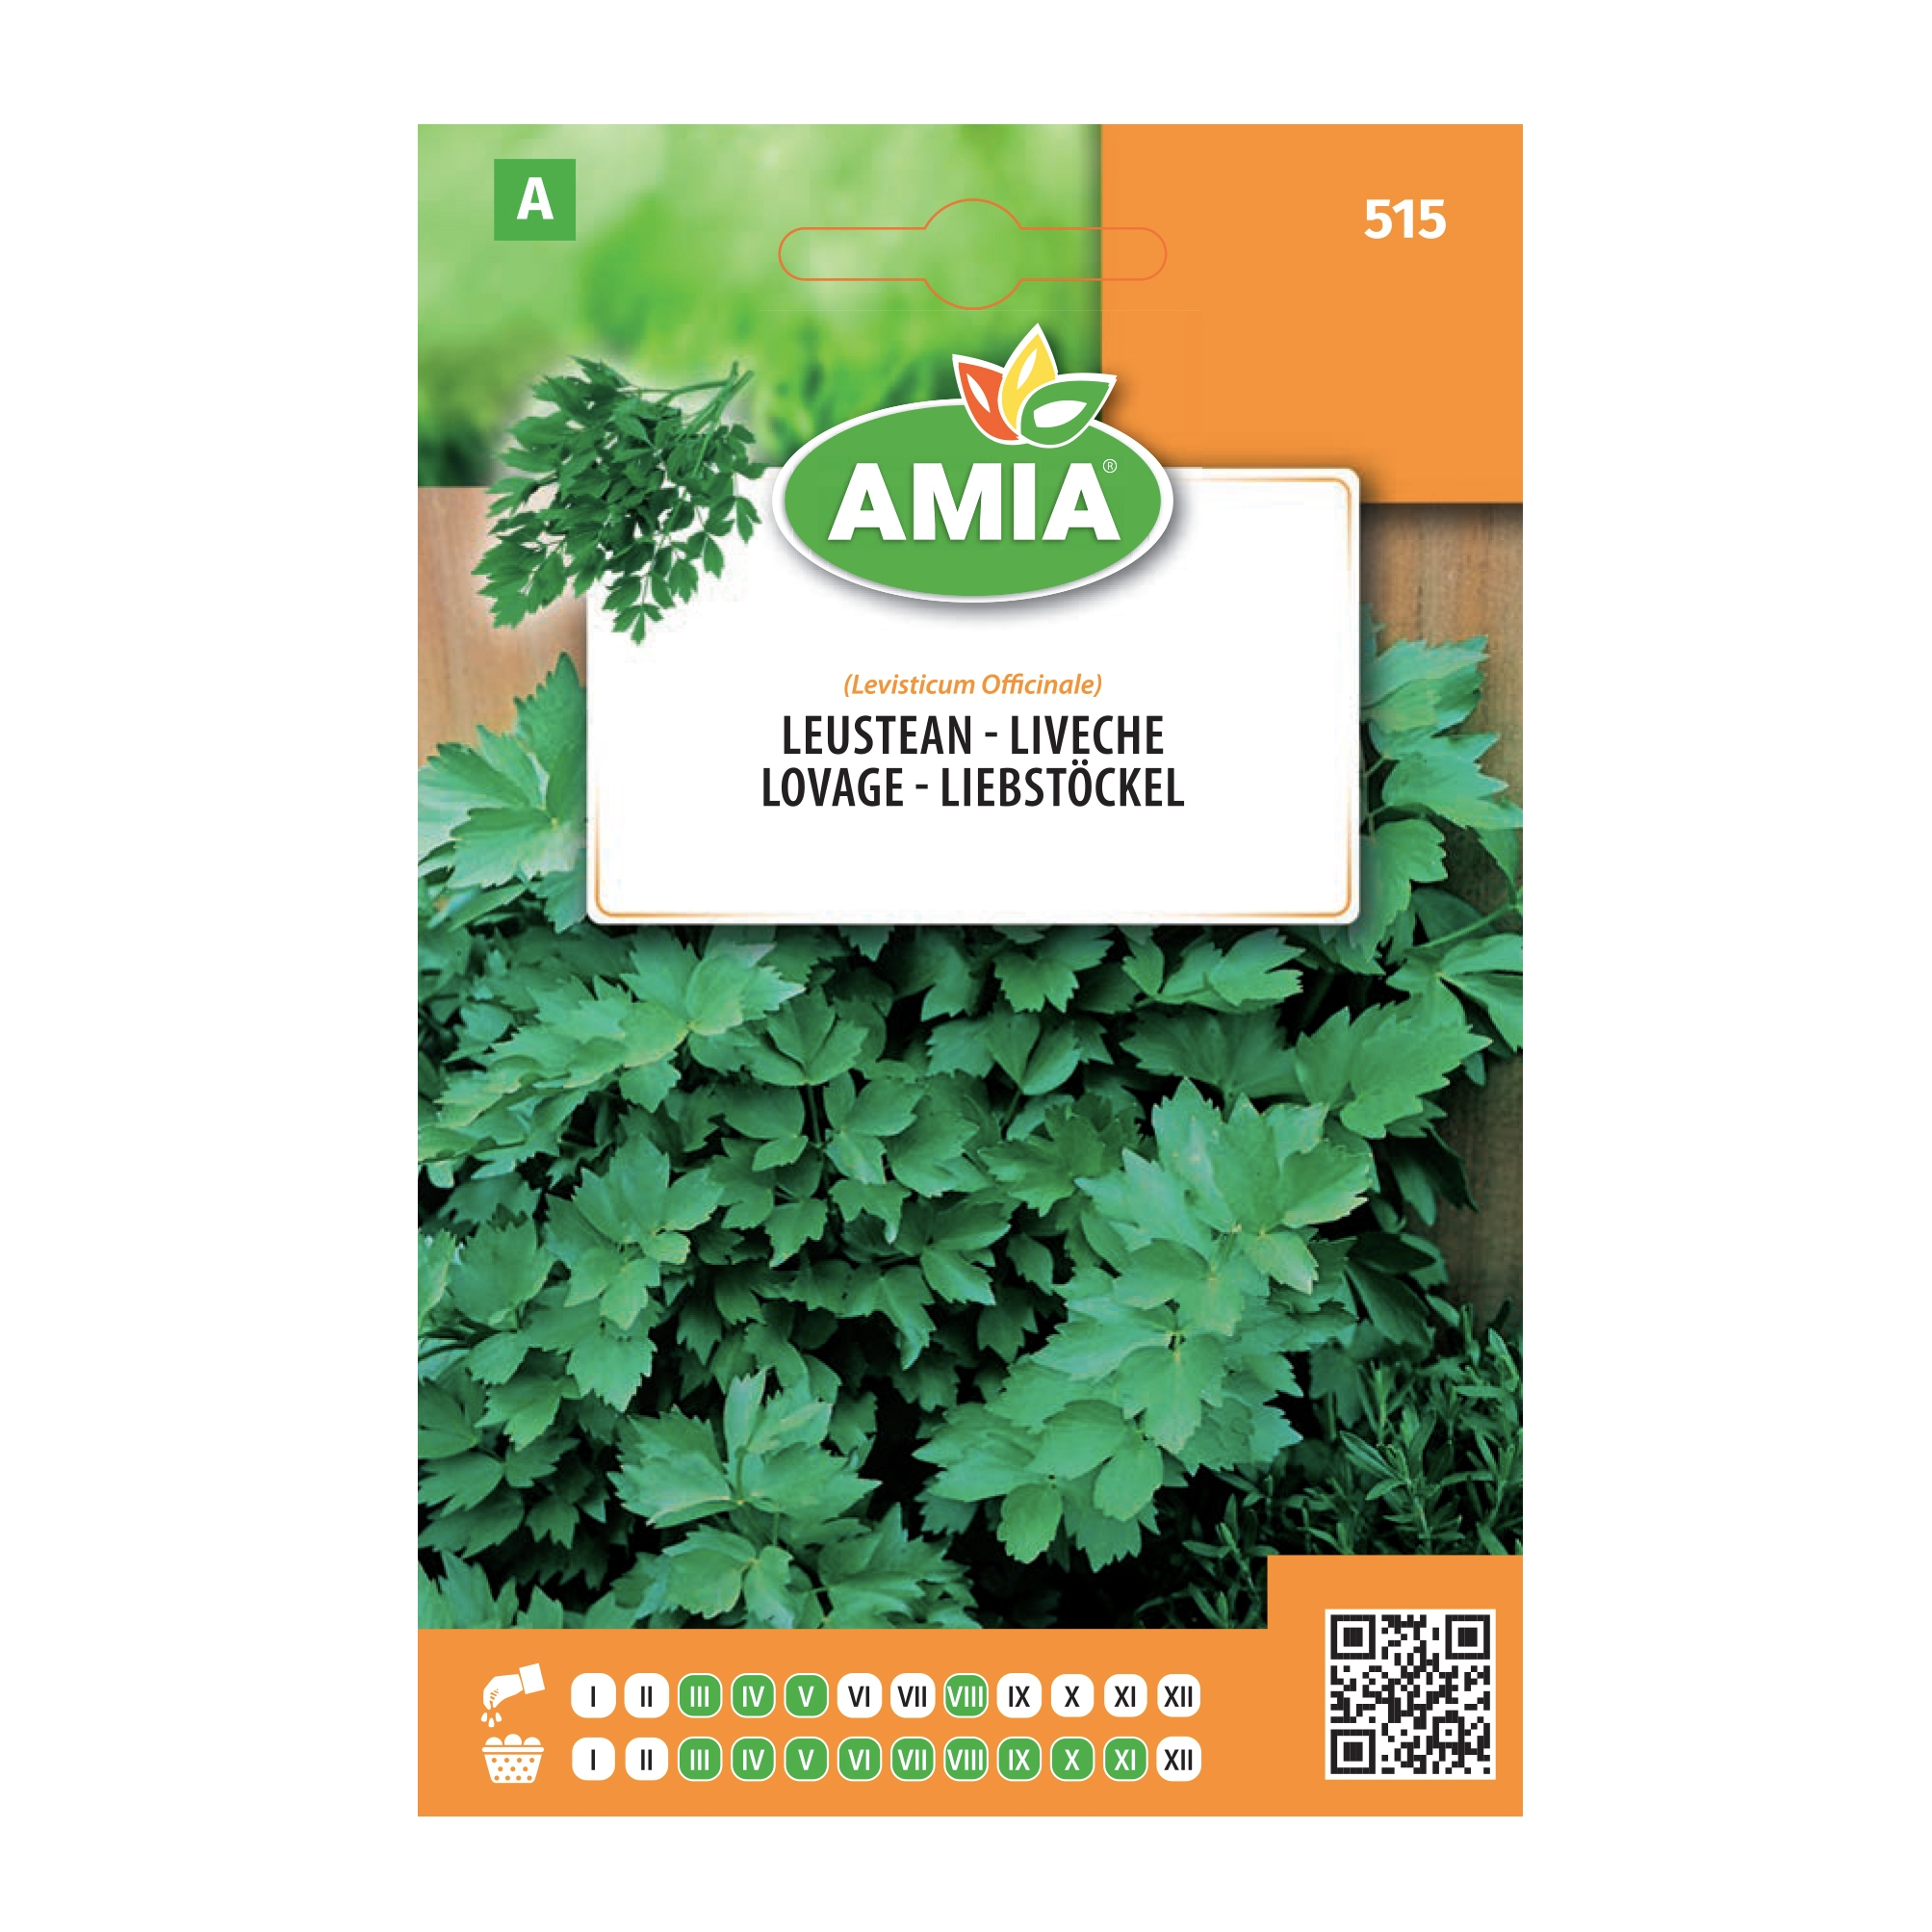 Seminte legume Amia A, leustean